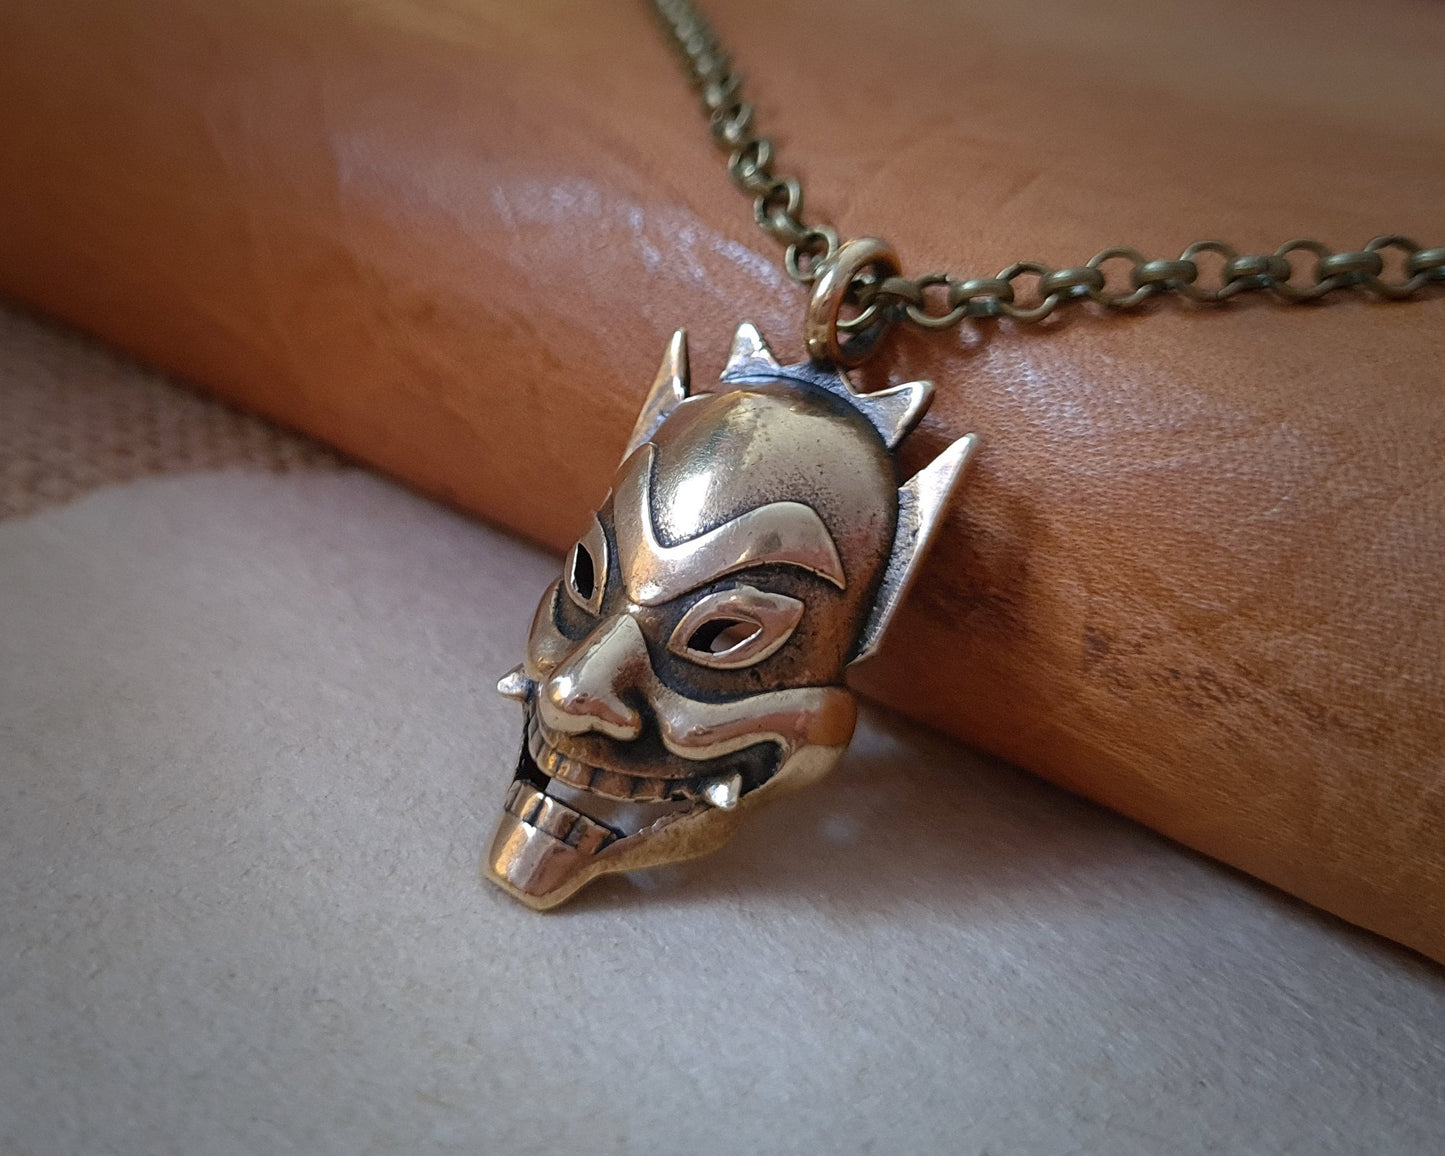 Japanese Oni Hannya Hanyia Demon Mask Pendant Necklace Jewelry Charm